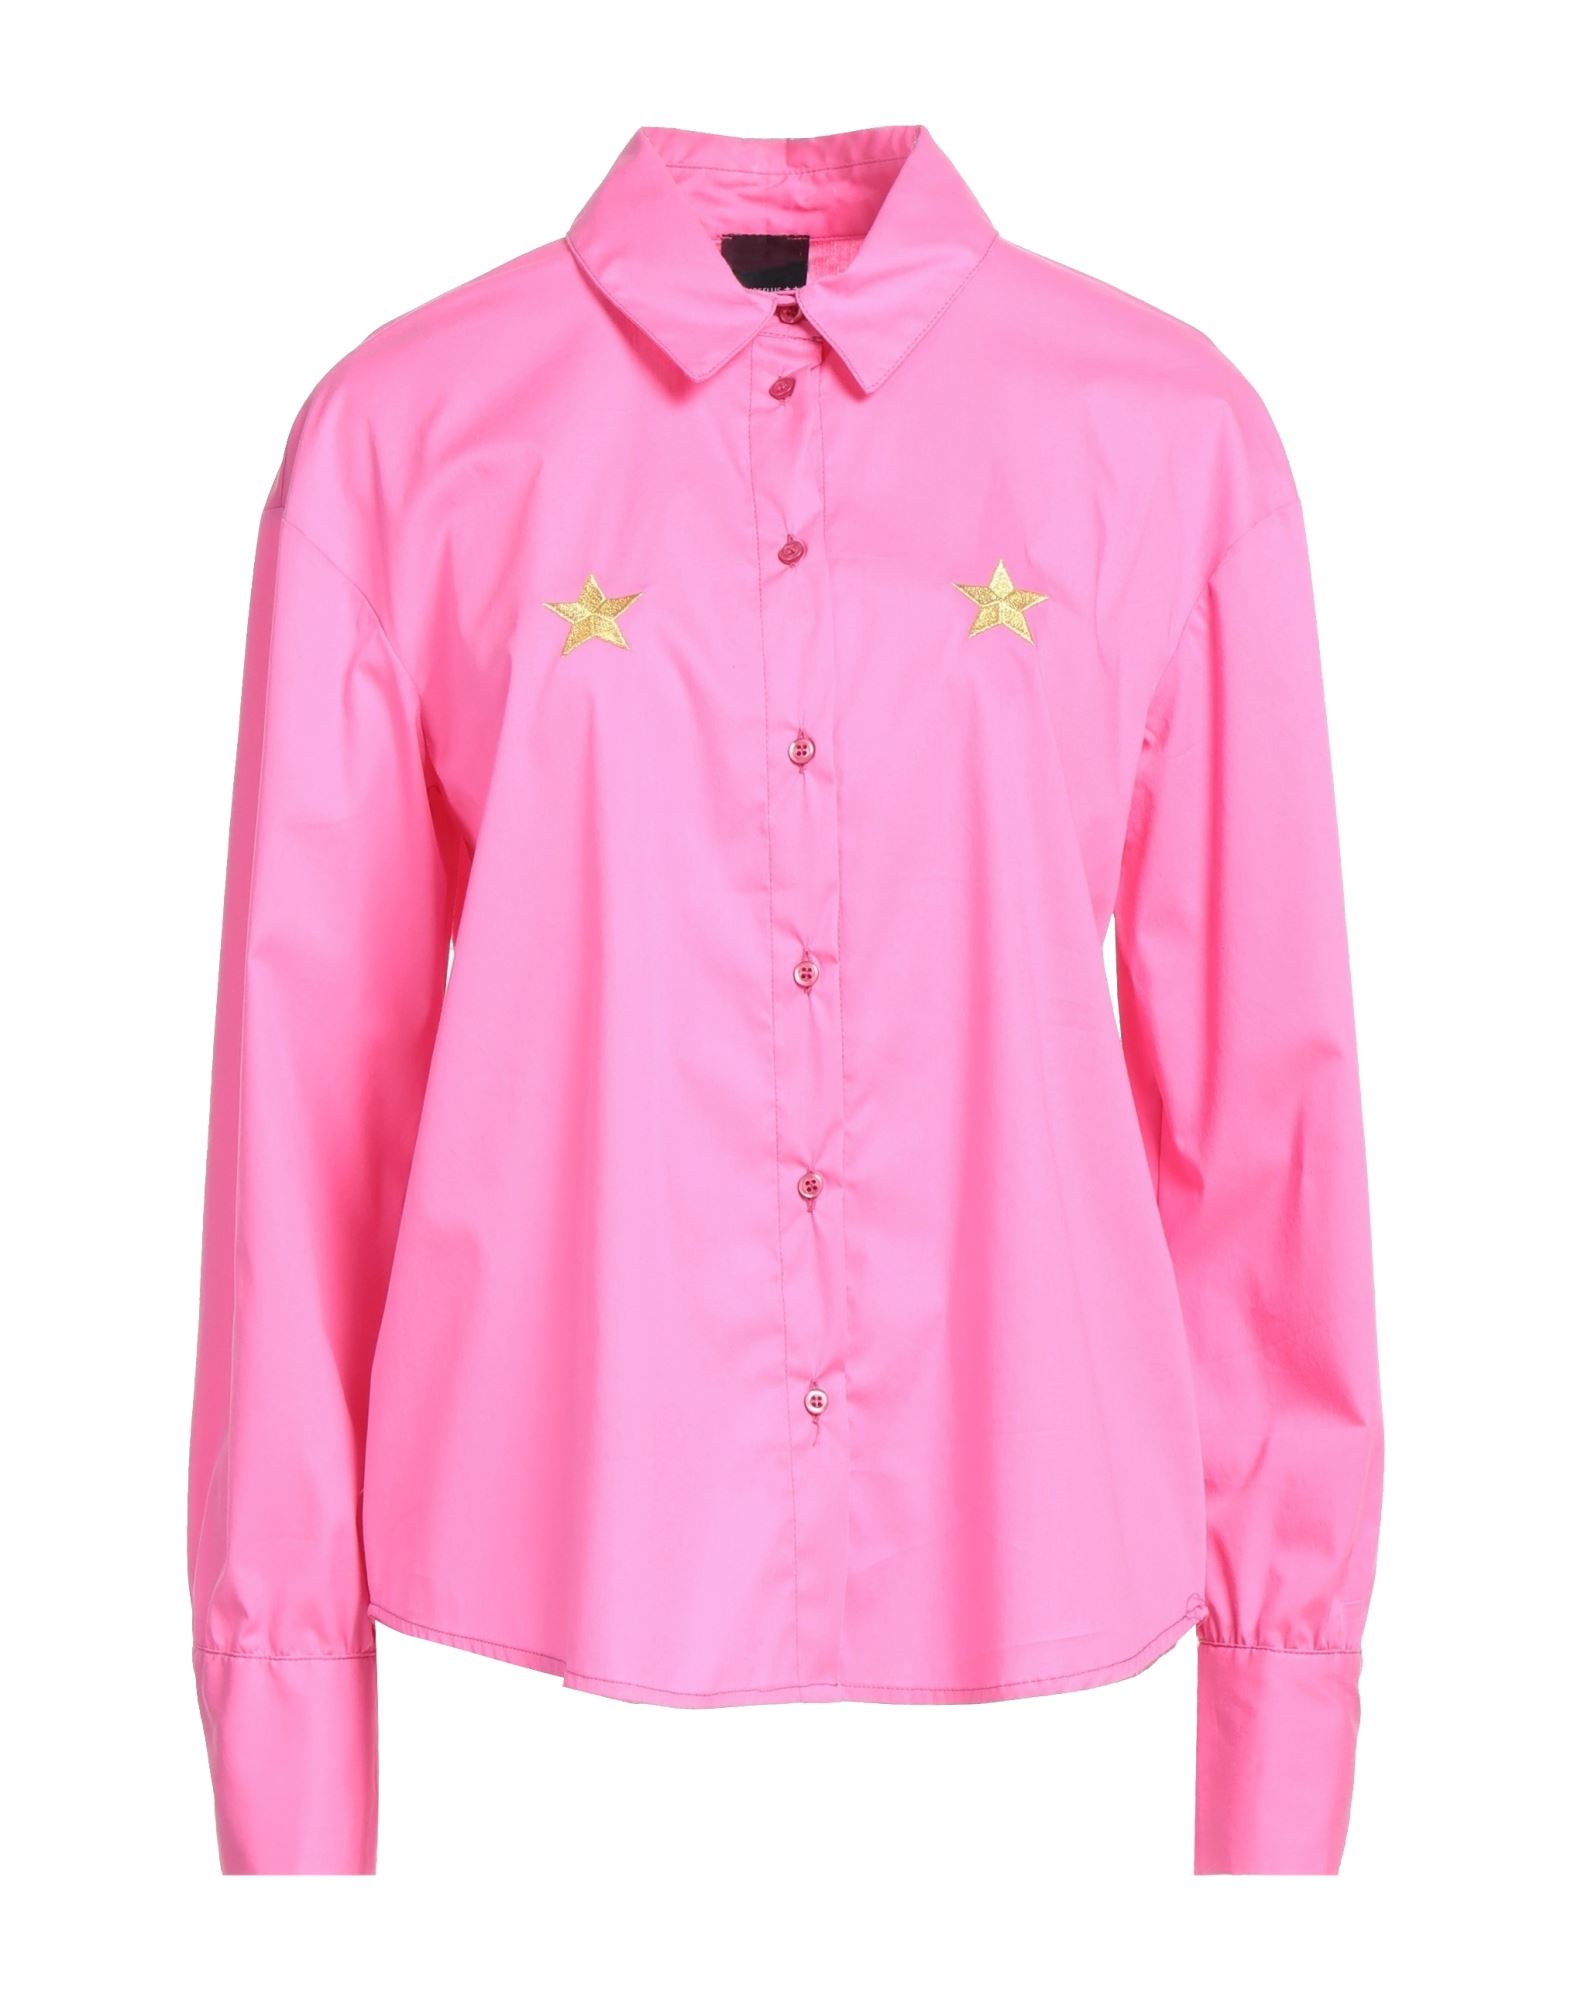 Marc Ellis Shirts In Pink